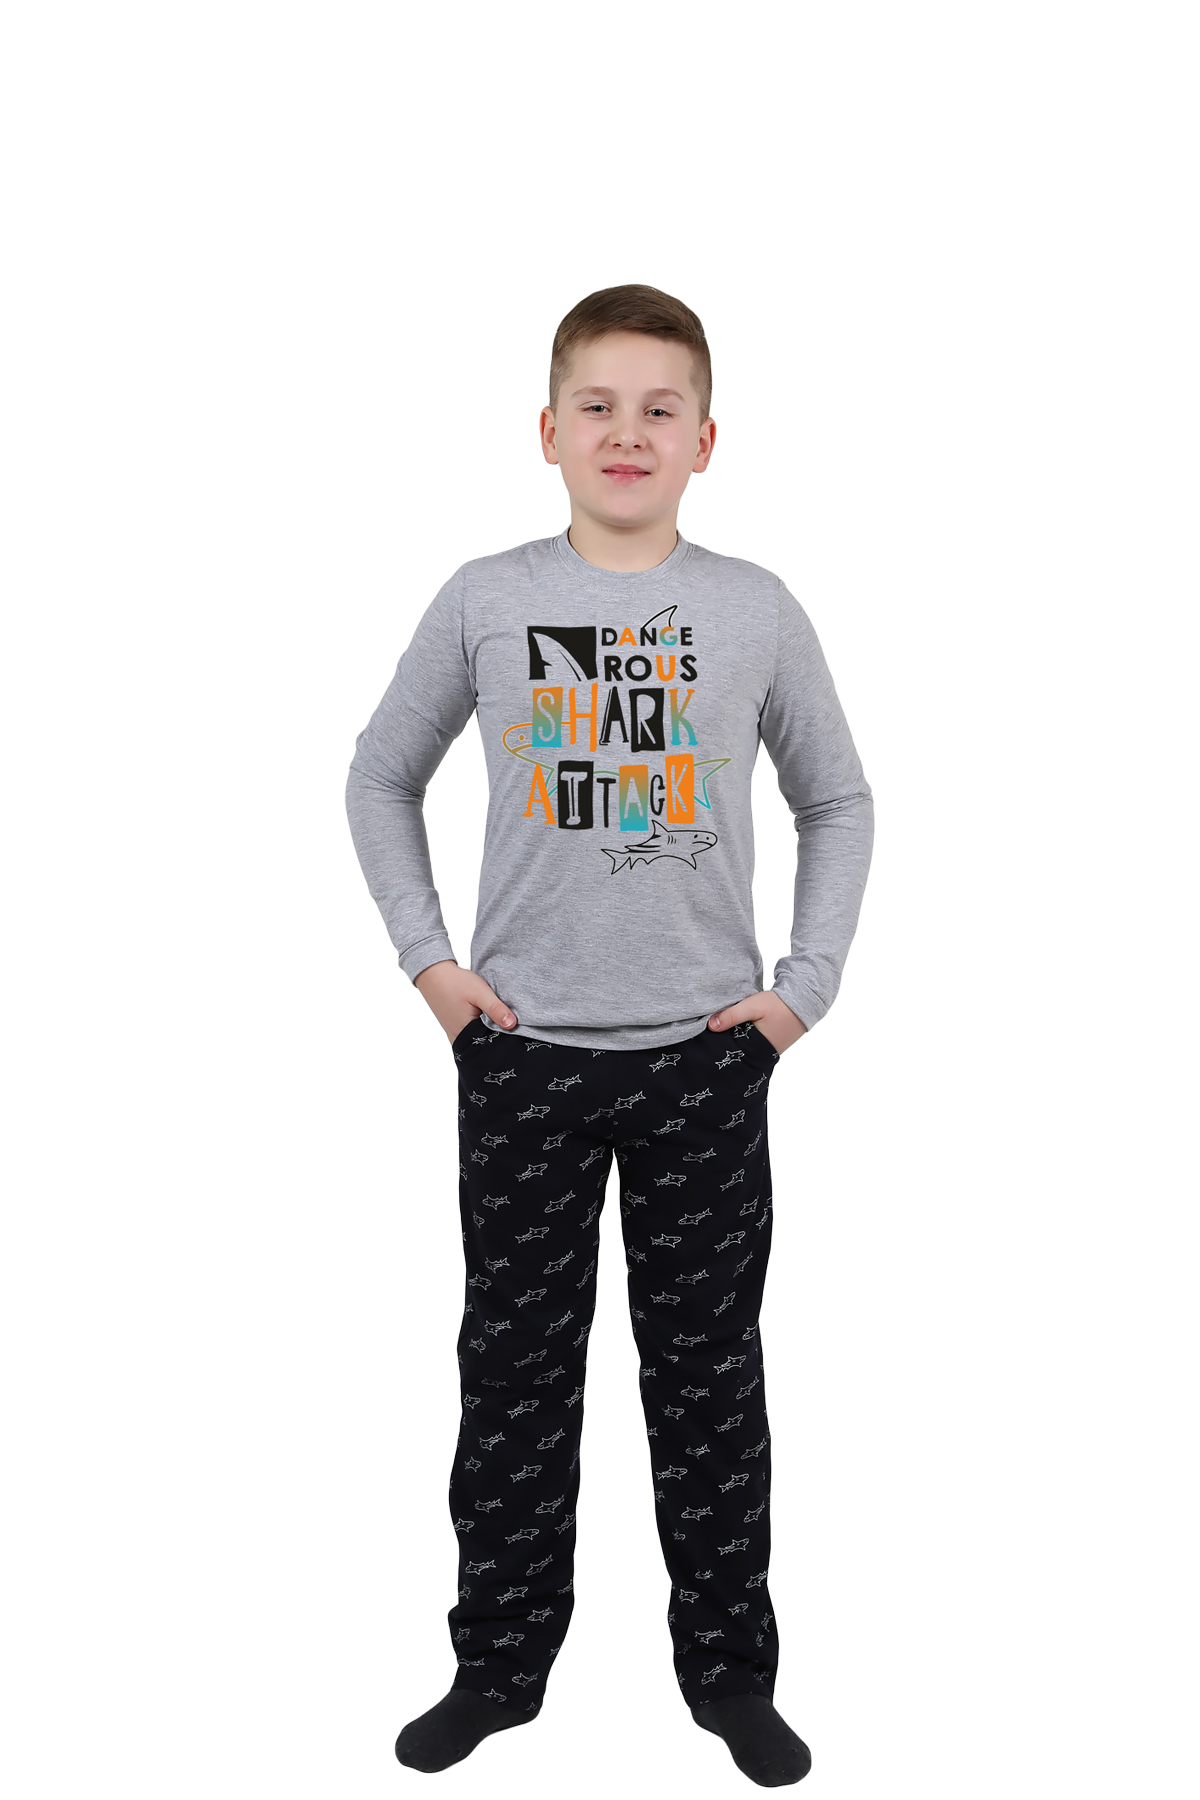 Детская пижама Акула Цвет: Серый Меланж (12 лет), размер 12 лет otj636453 Детская пижама Акула Цвет: Серый Меланж (12 лет) - фото 1